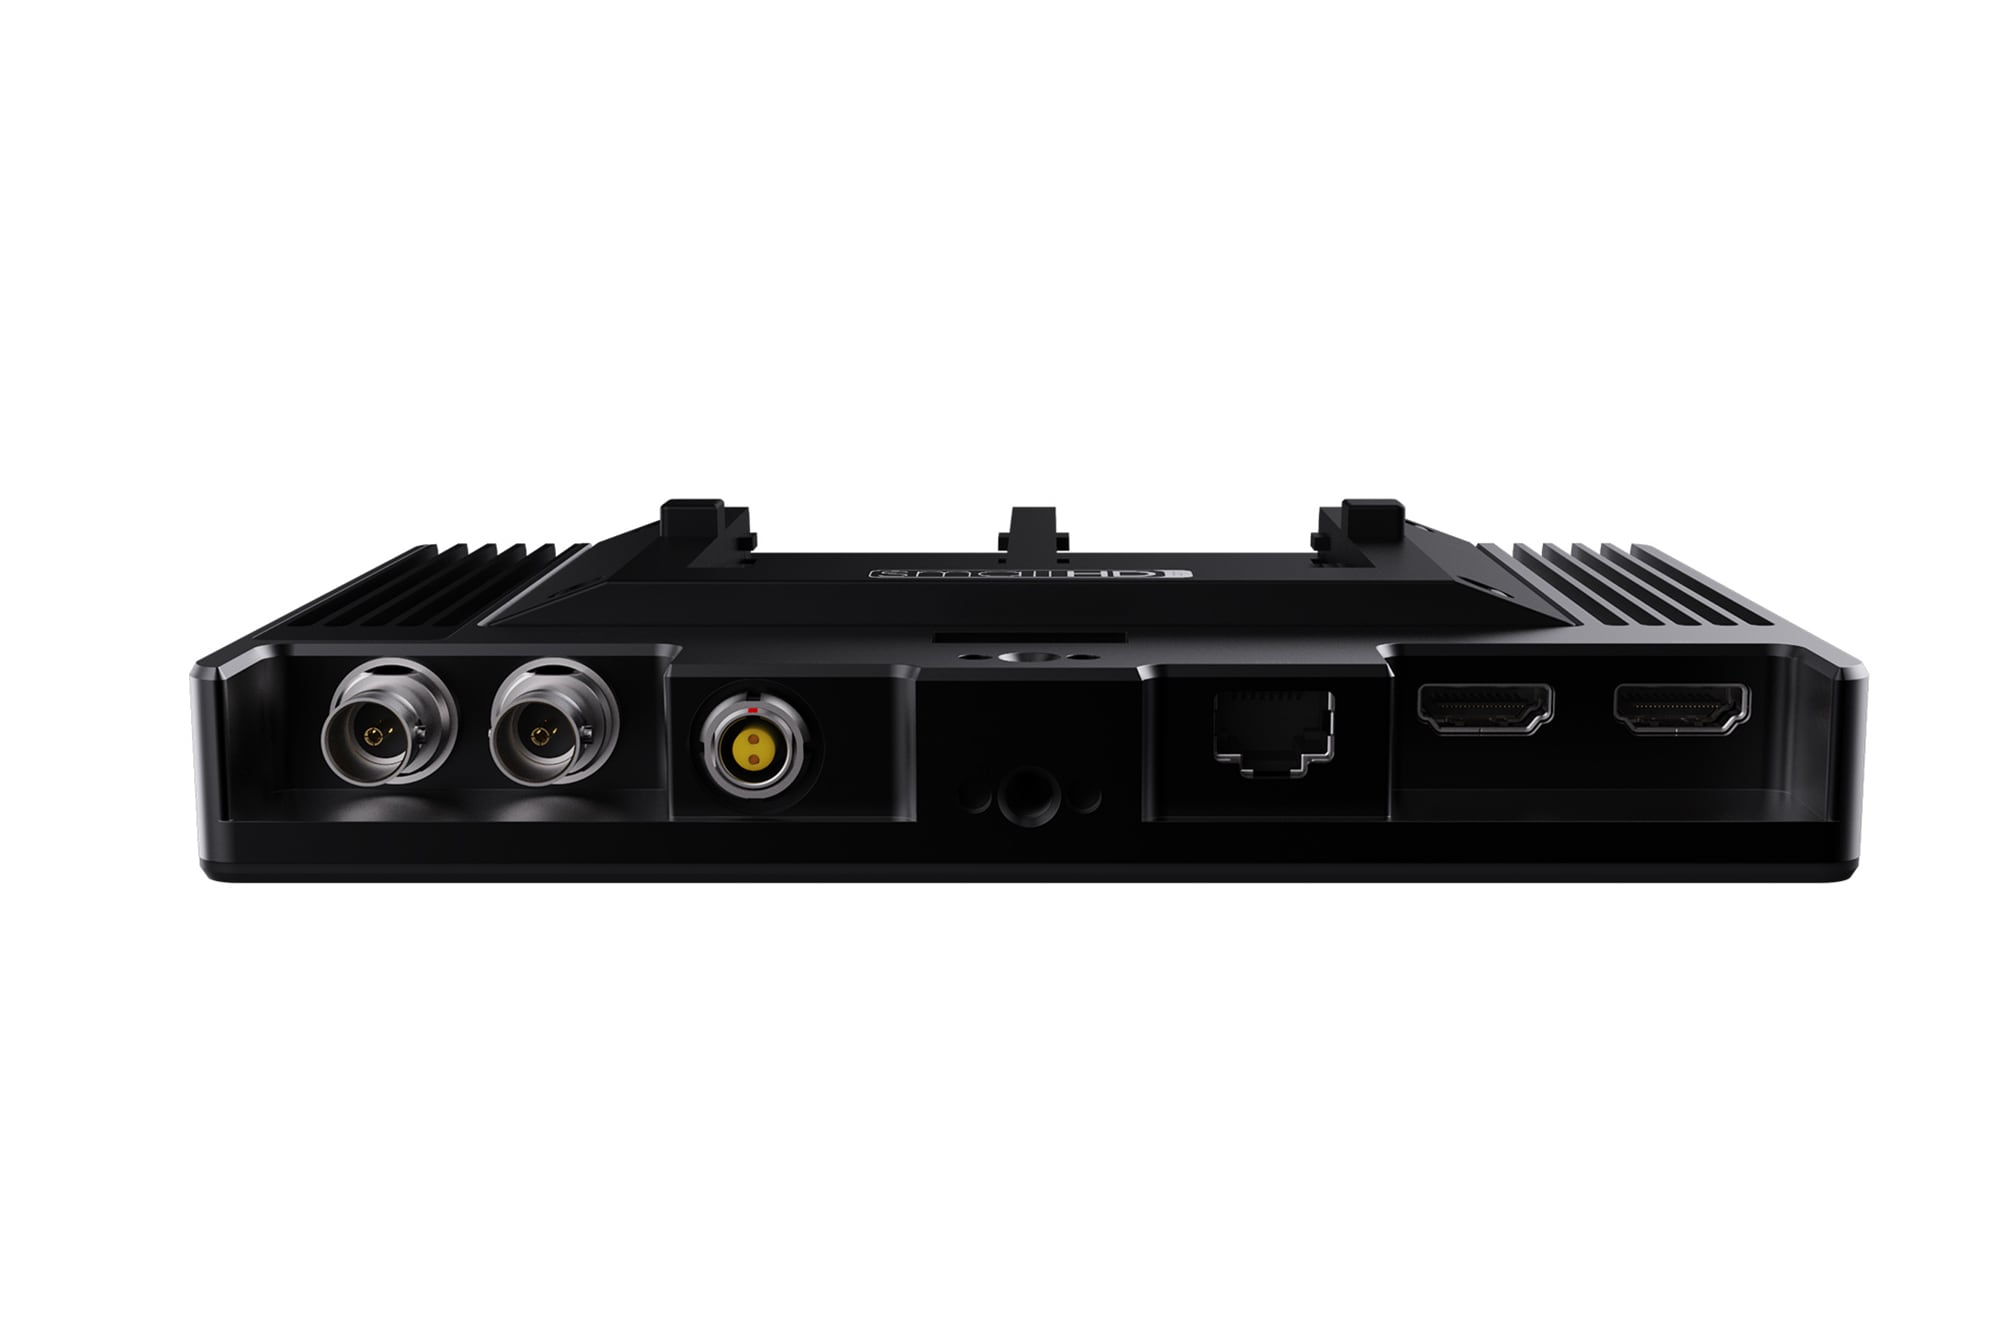 SmallHD Cine 7 7", 1800Nits, DCI-P3 Color Touchscreen Monitor + ARRI Camera Control Software